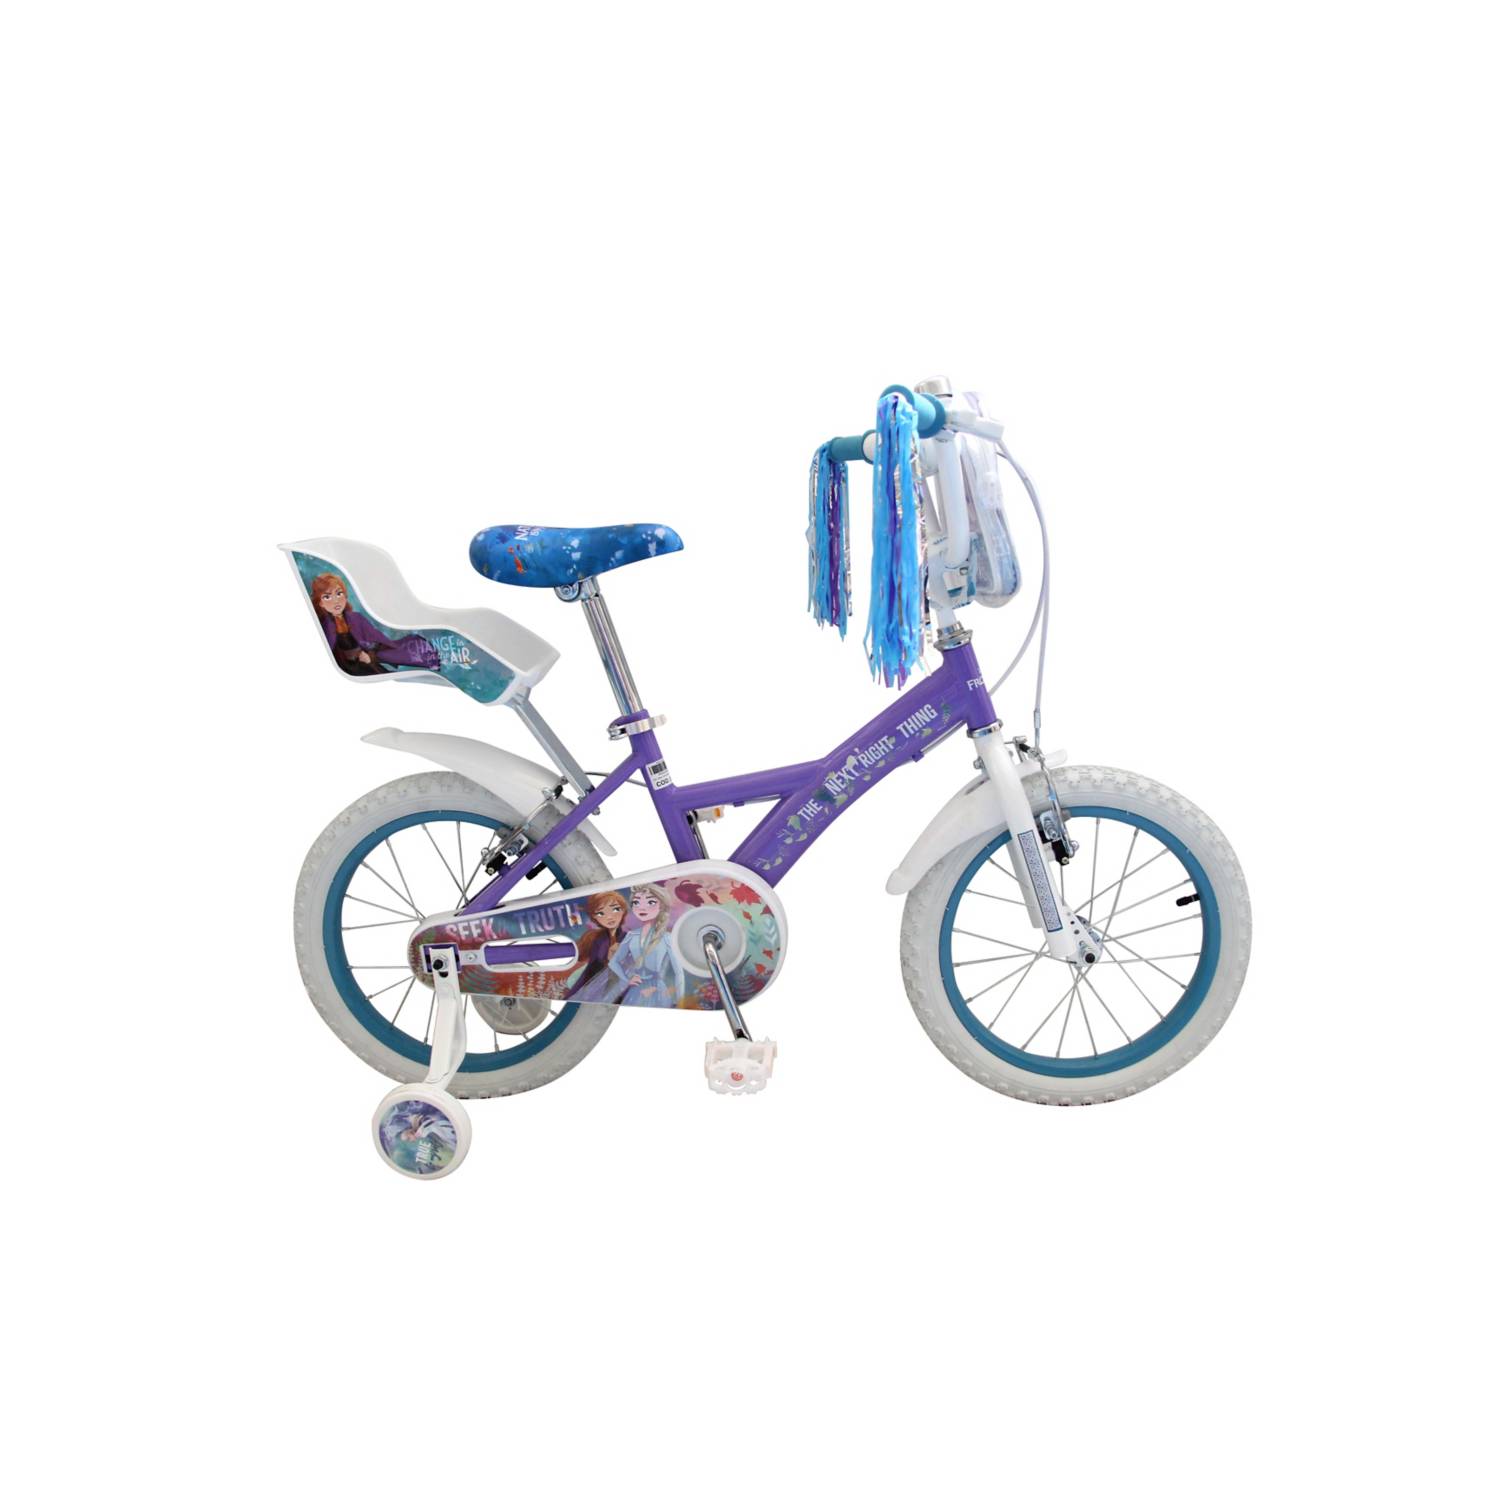 Bicicleta infantil Niña Princesse Aro 16